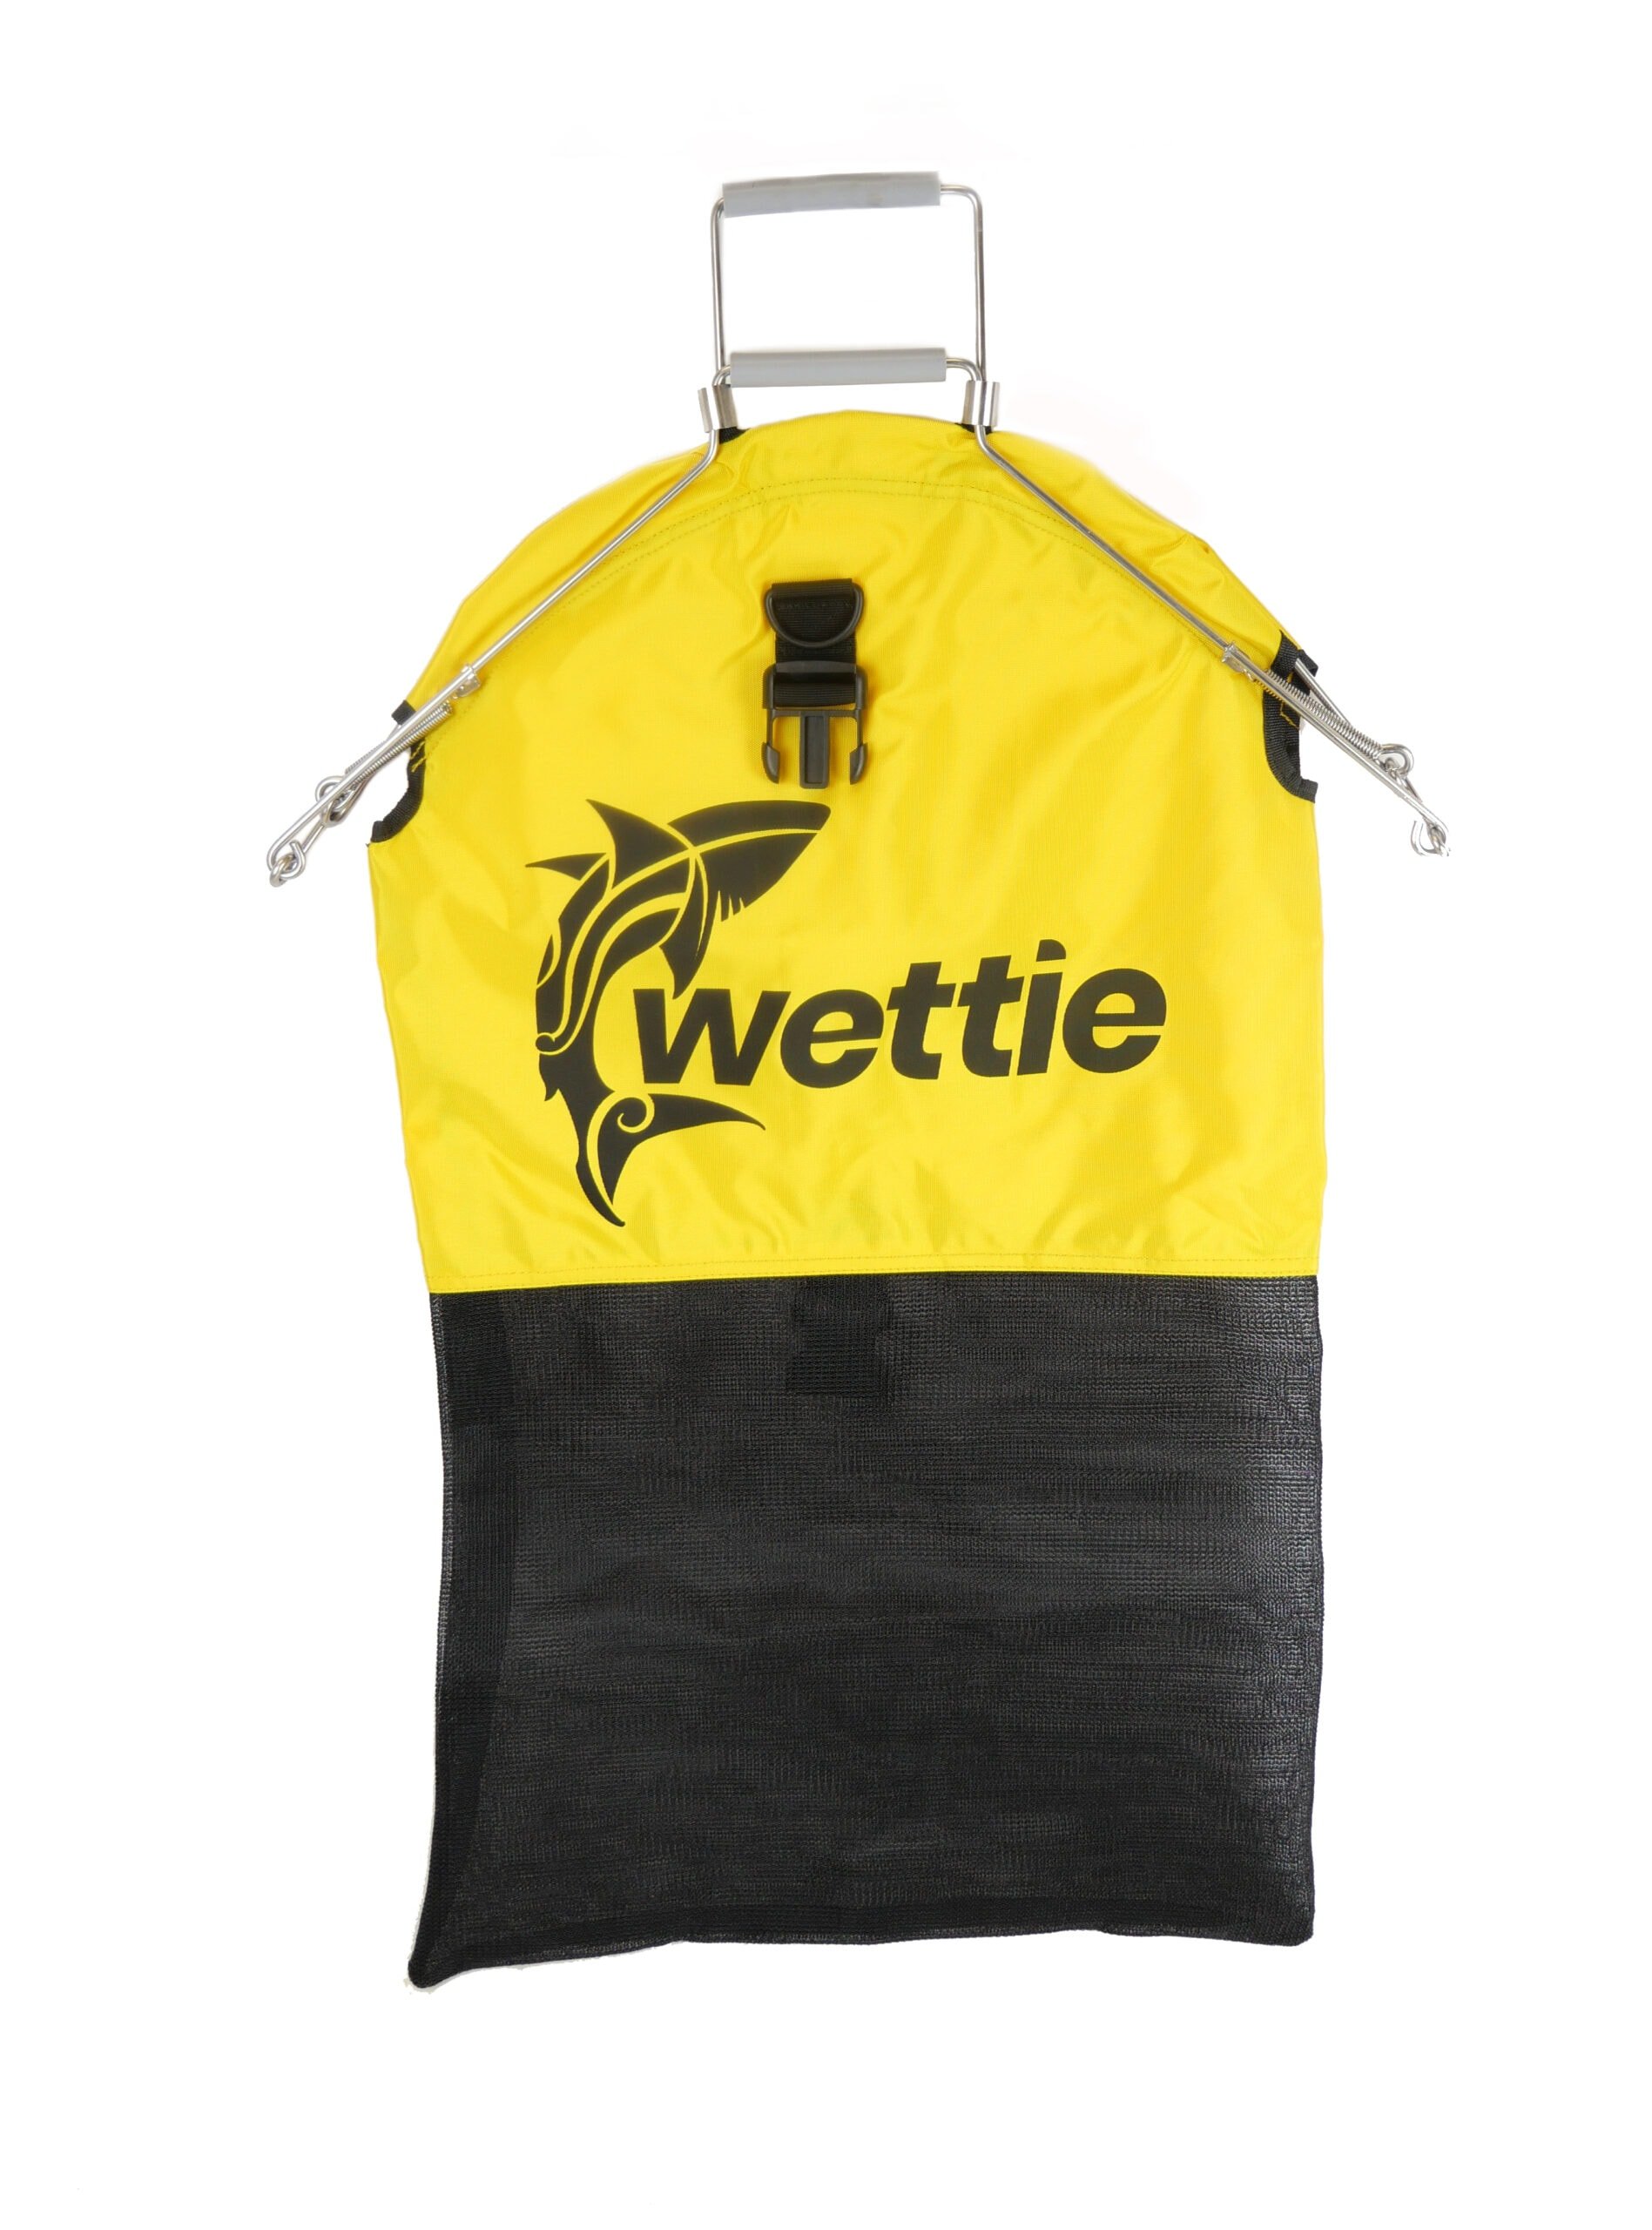 Wettie Spring Loaded Catch Bag - Wettie NZ